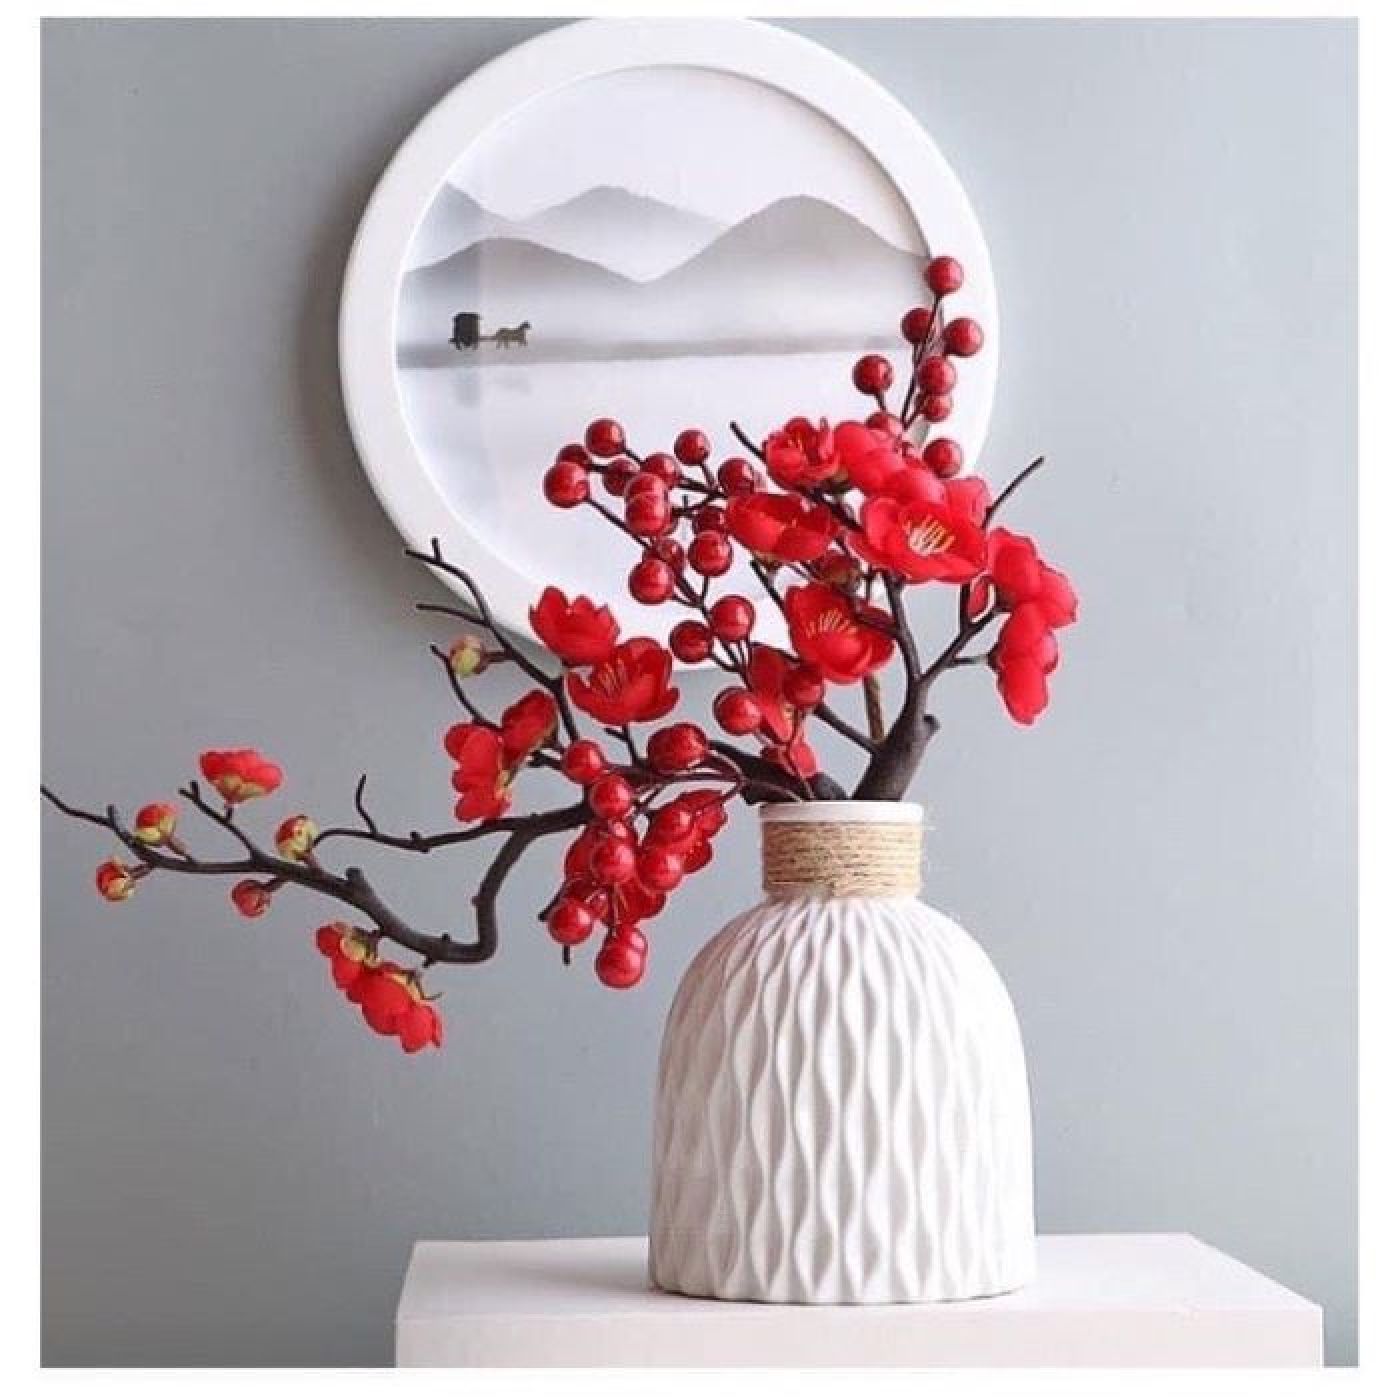 Bình hoa mai kèm đào đông đỏ, Bình hoa đào bonsai, hoa mai giả trang trí tết